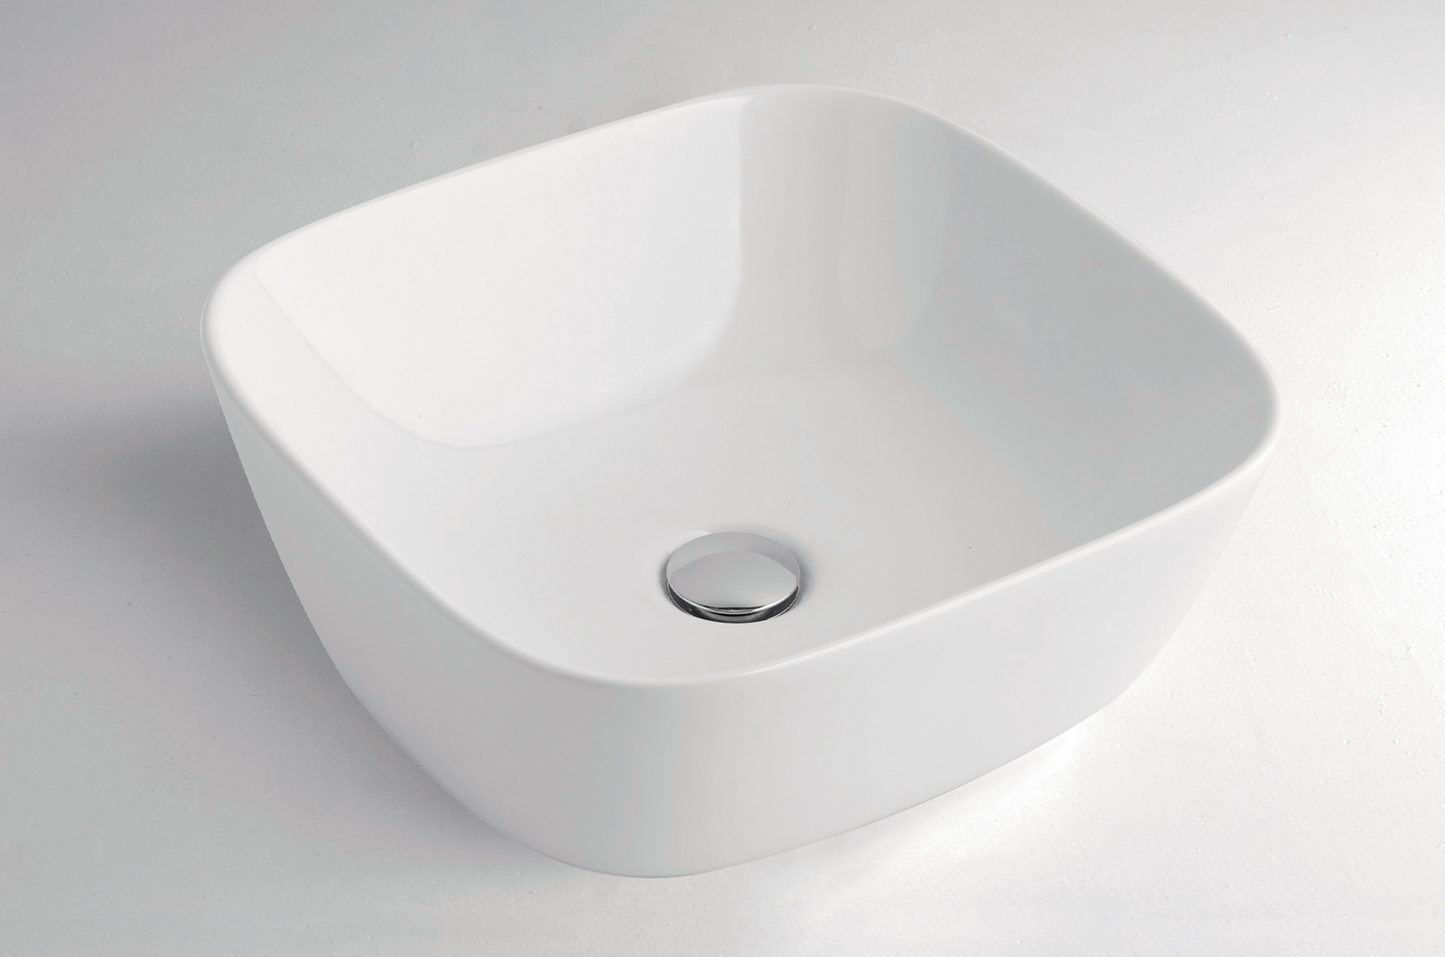 Soul ceramic countertop washbasin